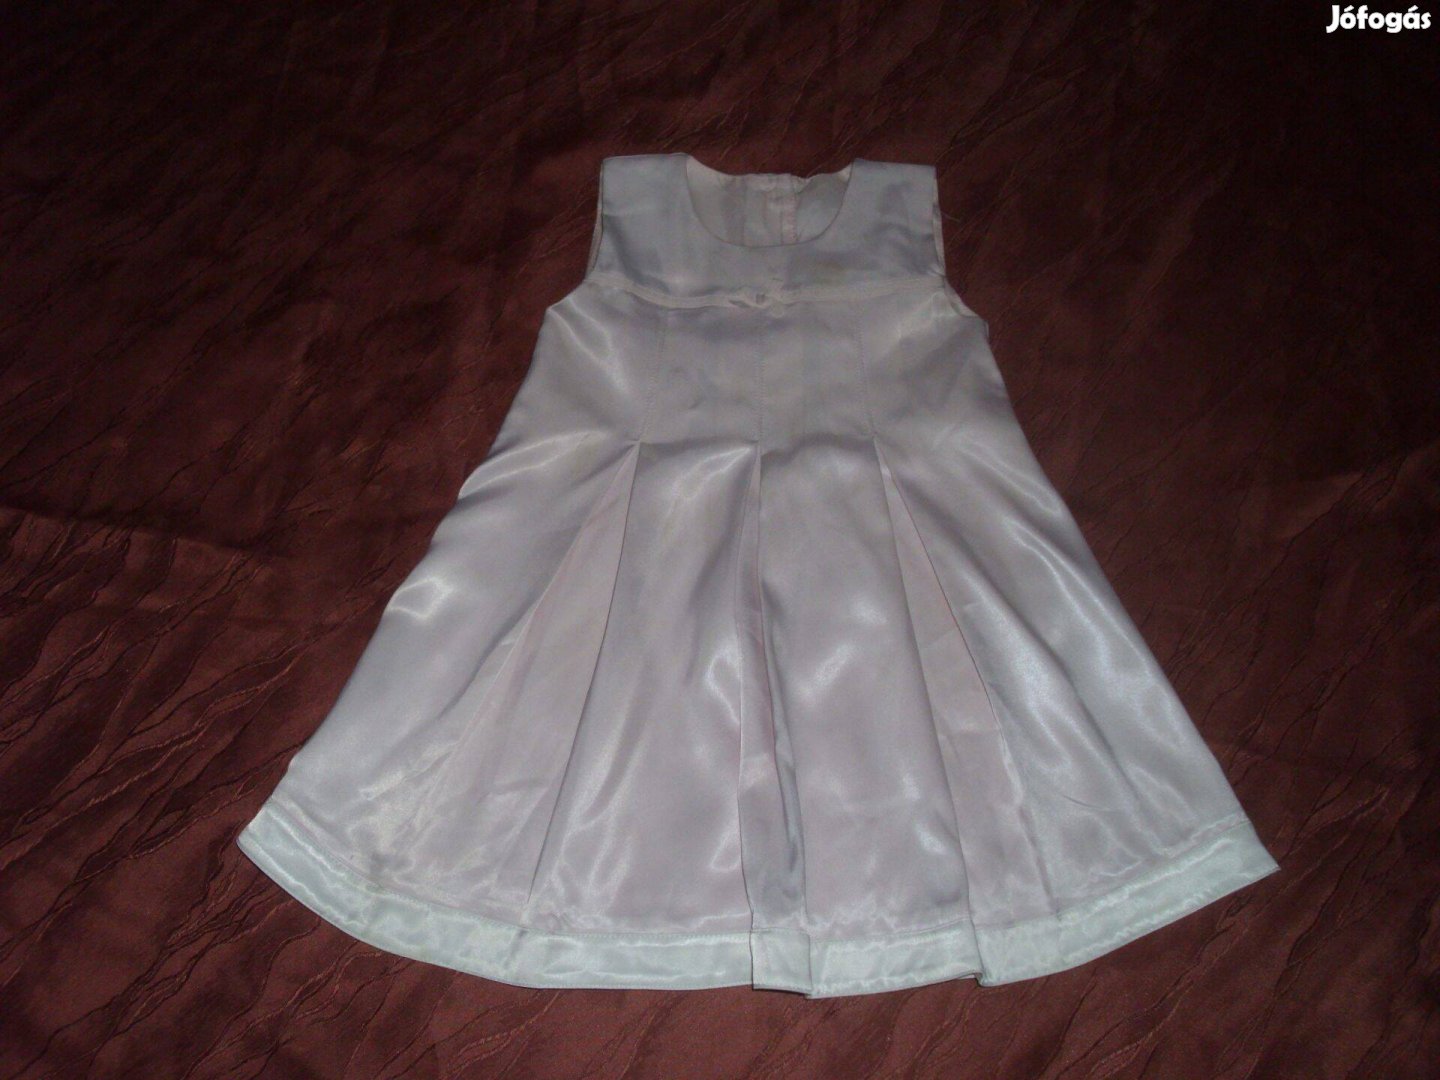 Halvány rózsaszín ruha 9-12 hó 74 - 80 cm hátul gombos h:49 cm mb:52 c